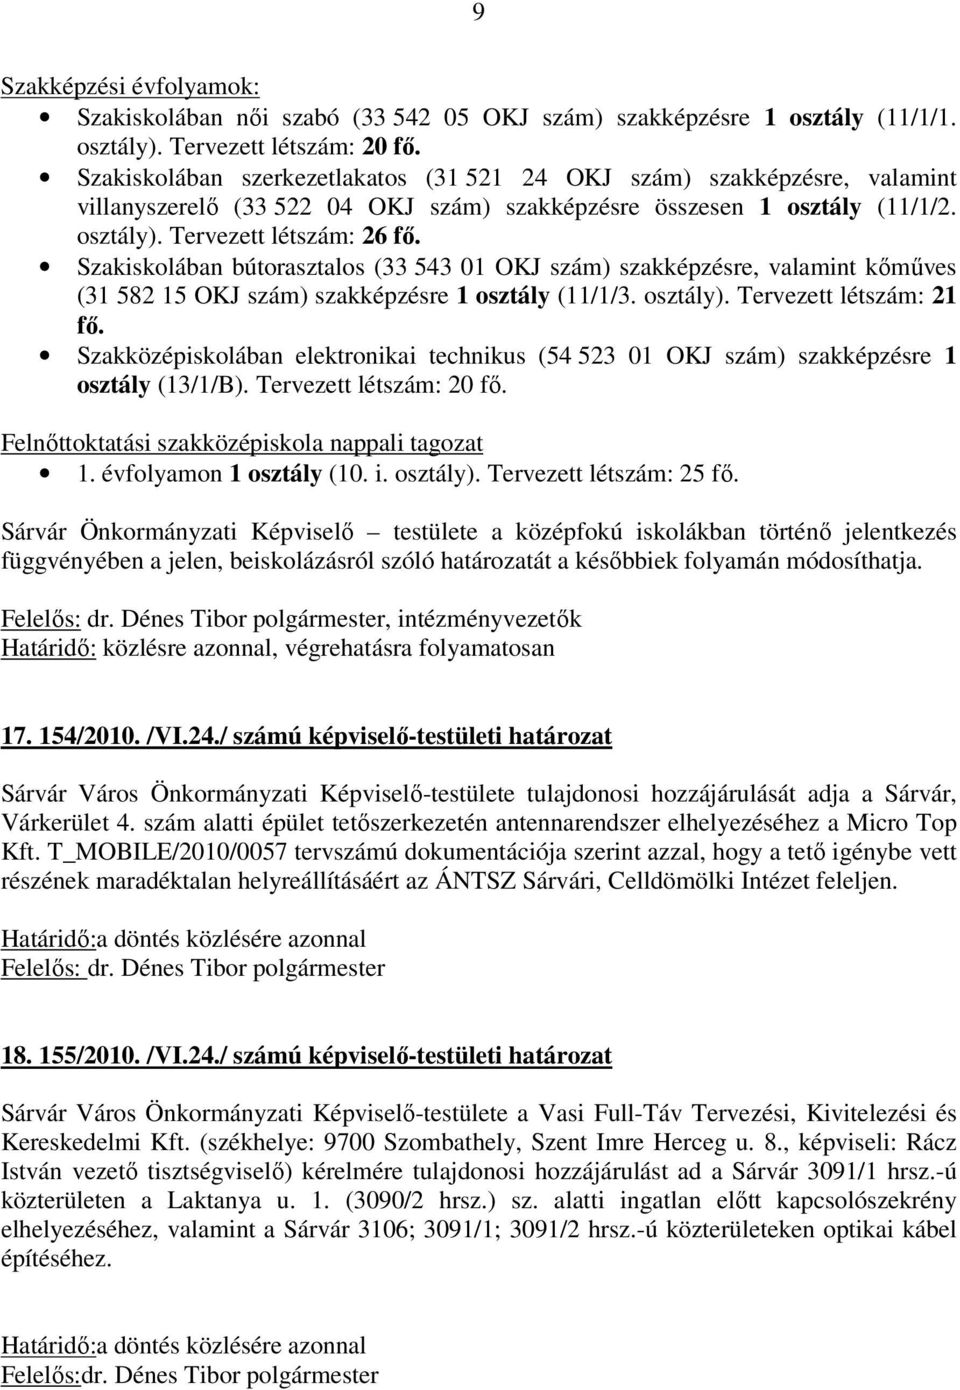 Szakiskolában bútorasztalos (33 543 01 OKJ szám) szakképzésre, valamint kőműves (31 582 15 OKJ szám) szakképzésre 1 osztály (11/1/3. osztály). Tervezett létszám: 21 fő.